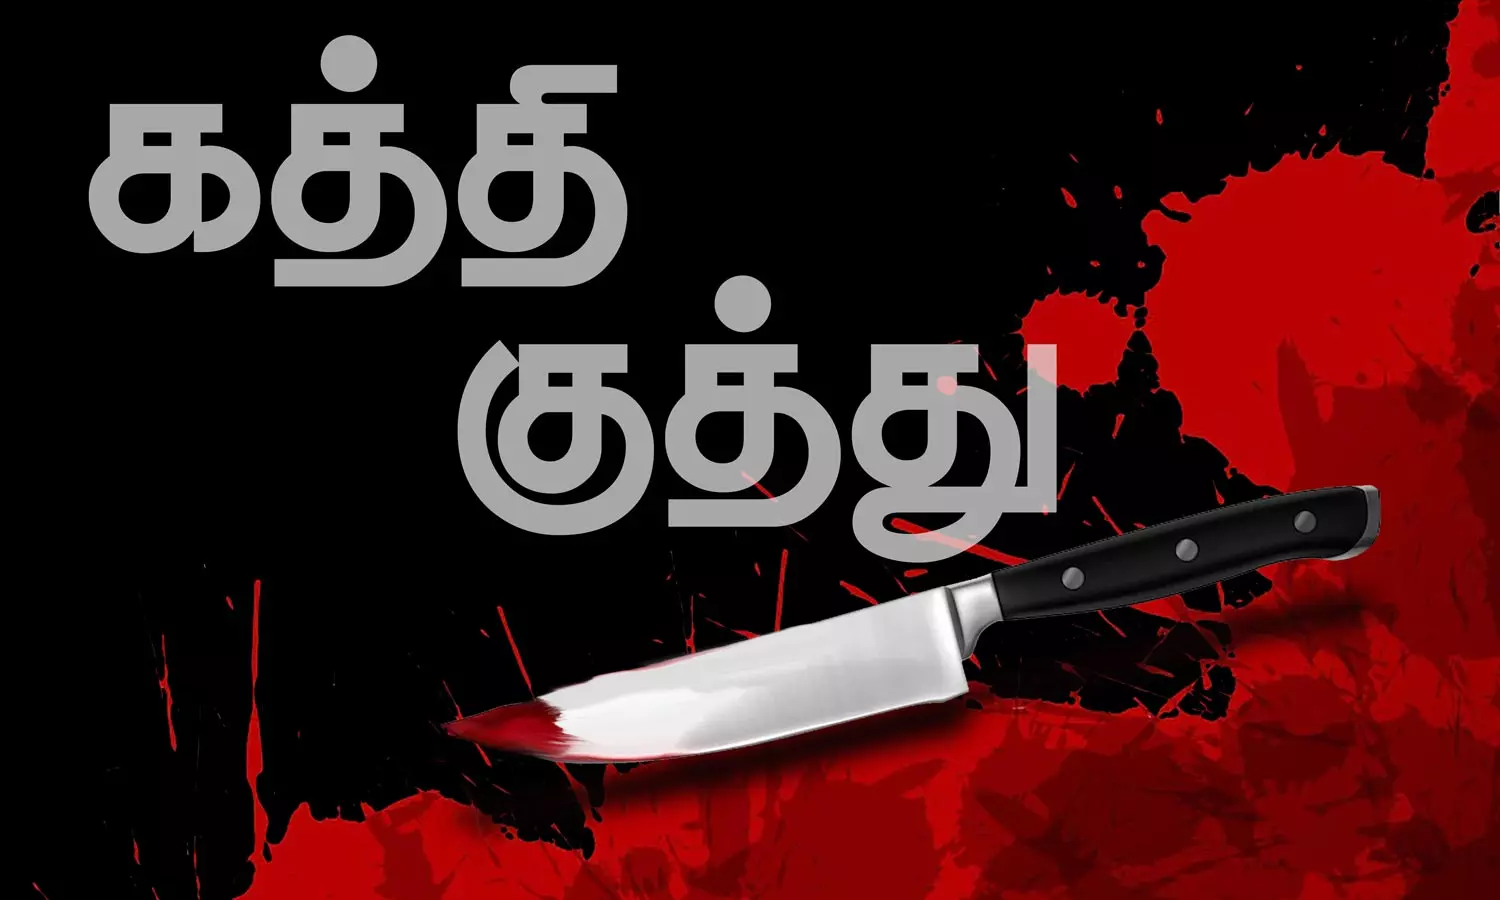 சென்னையில் காதலிக்க மறுத்த கல்லூரி மாணவிக்கு கத்திக்குத்து | Tamil News  College girl who refused to love was stabbed